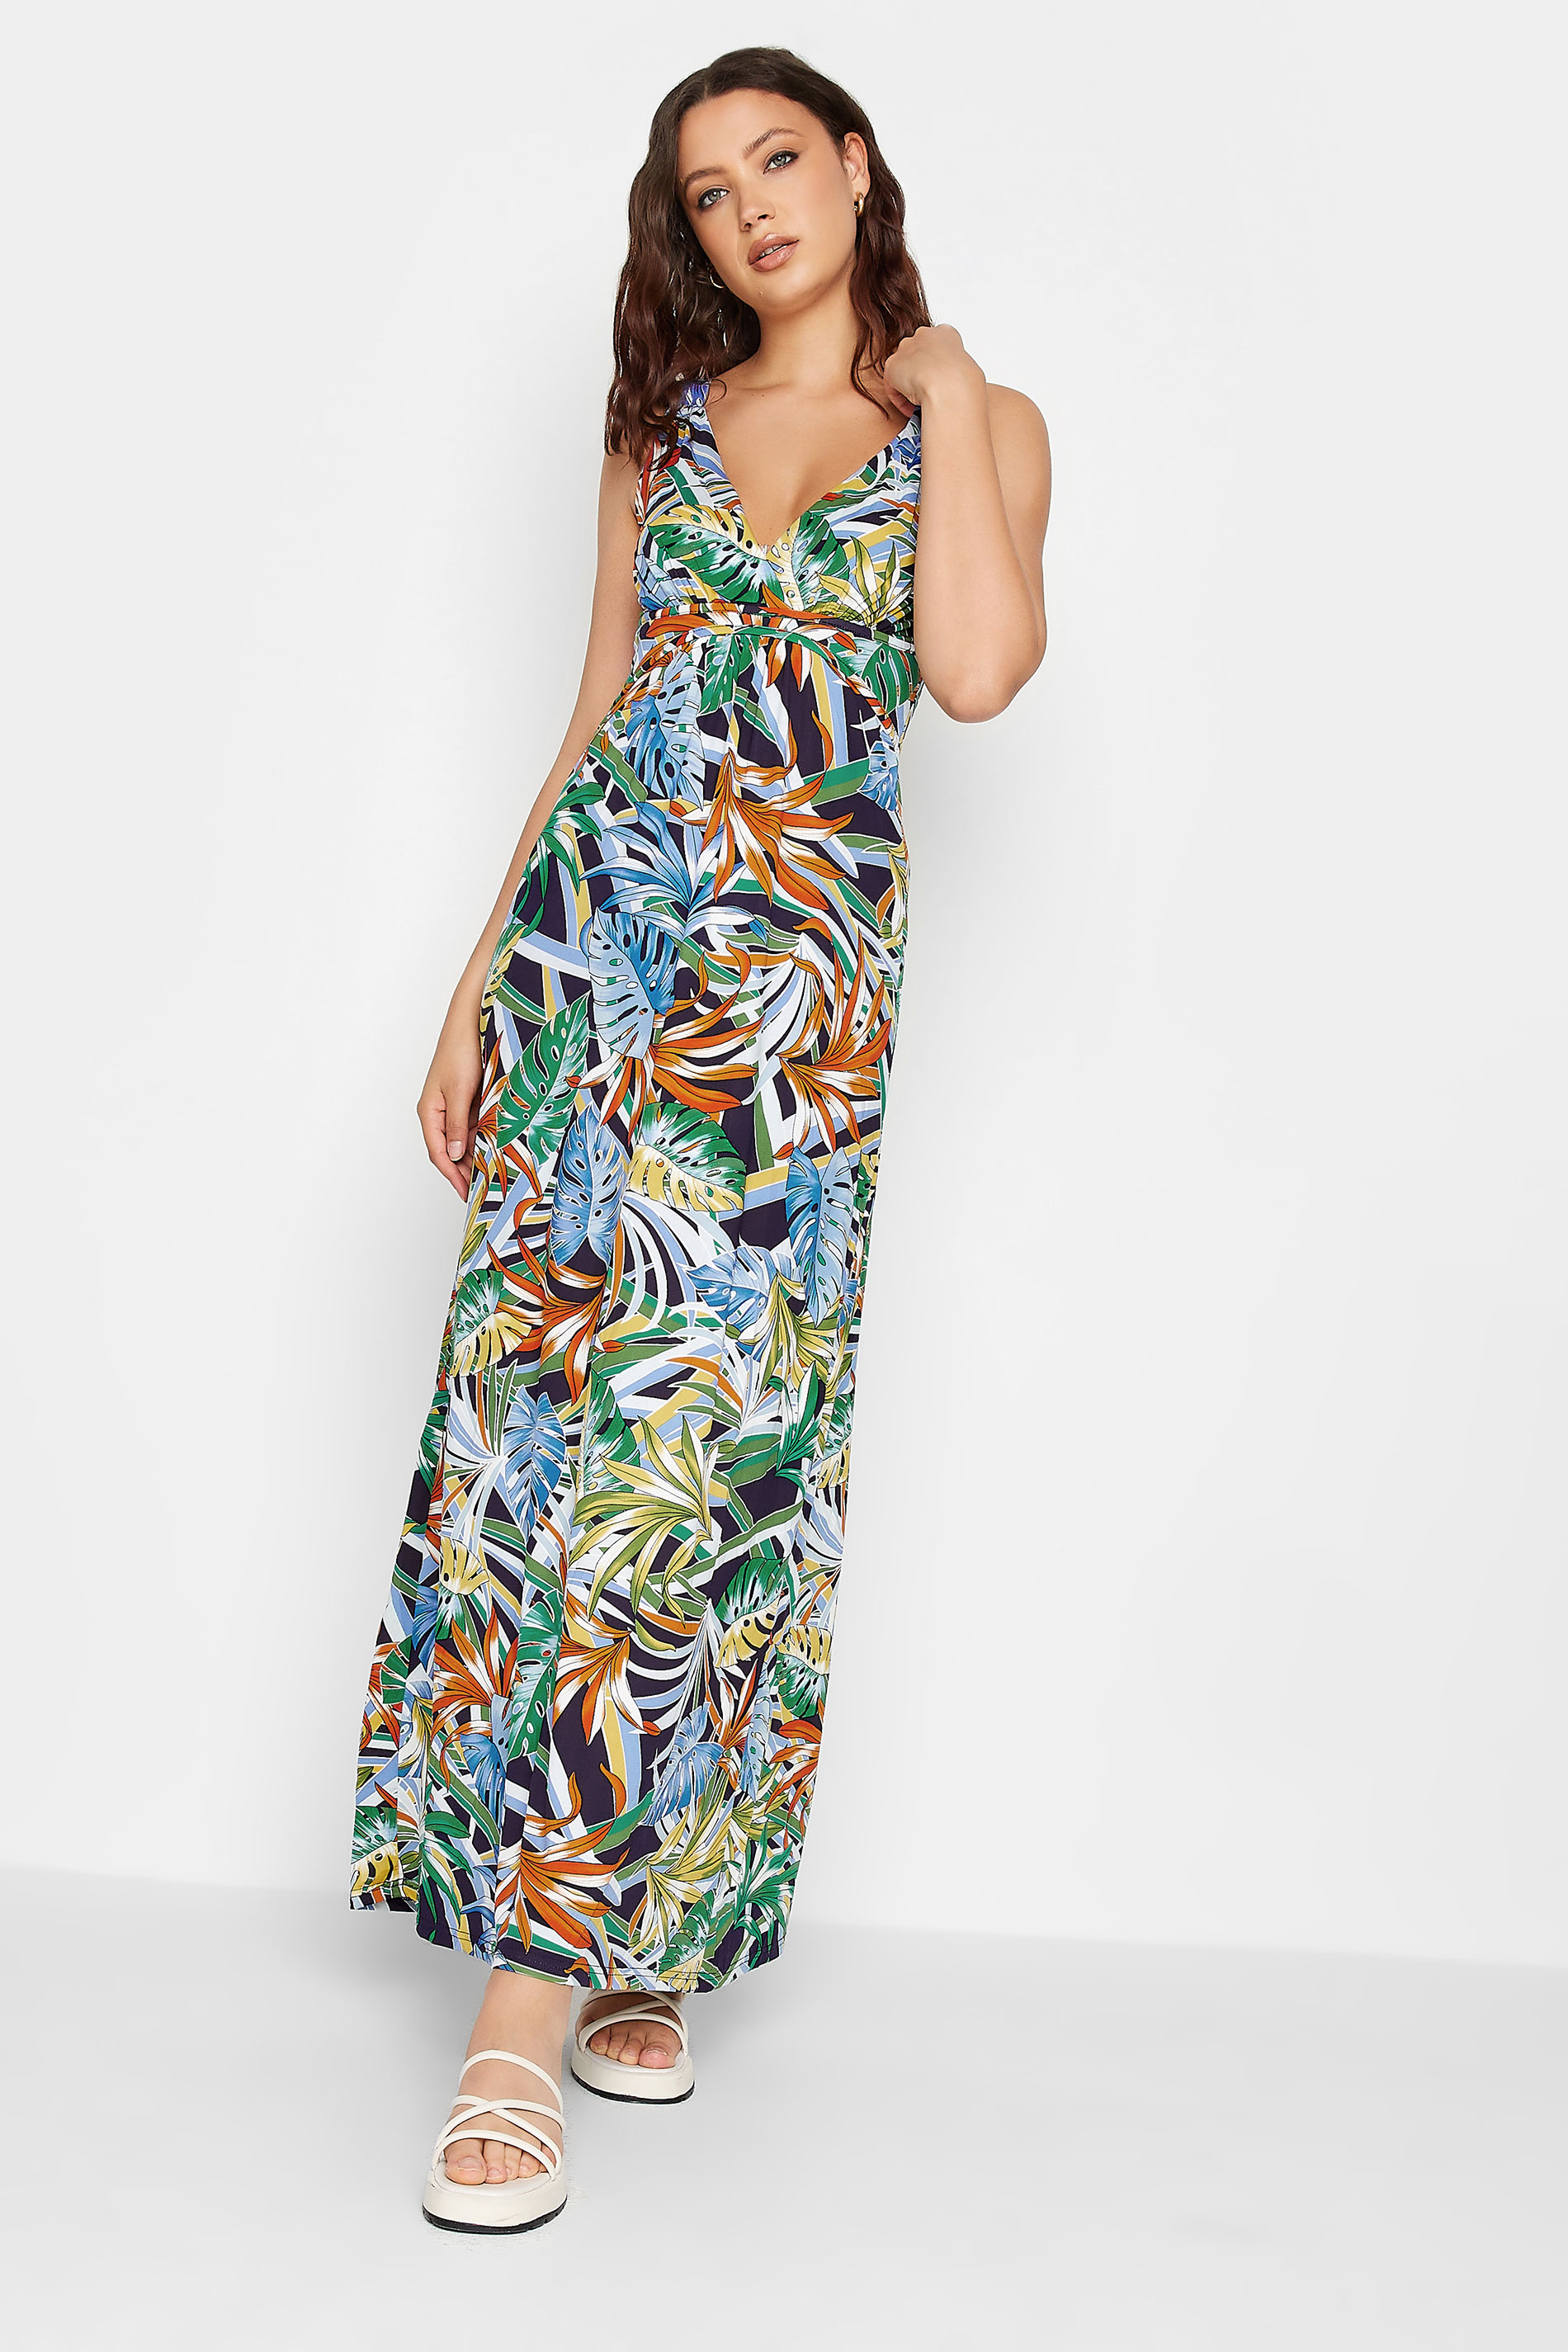 LTS Tall Green Palm Leaf Print Maxi Dress | Long Tall Sally  1